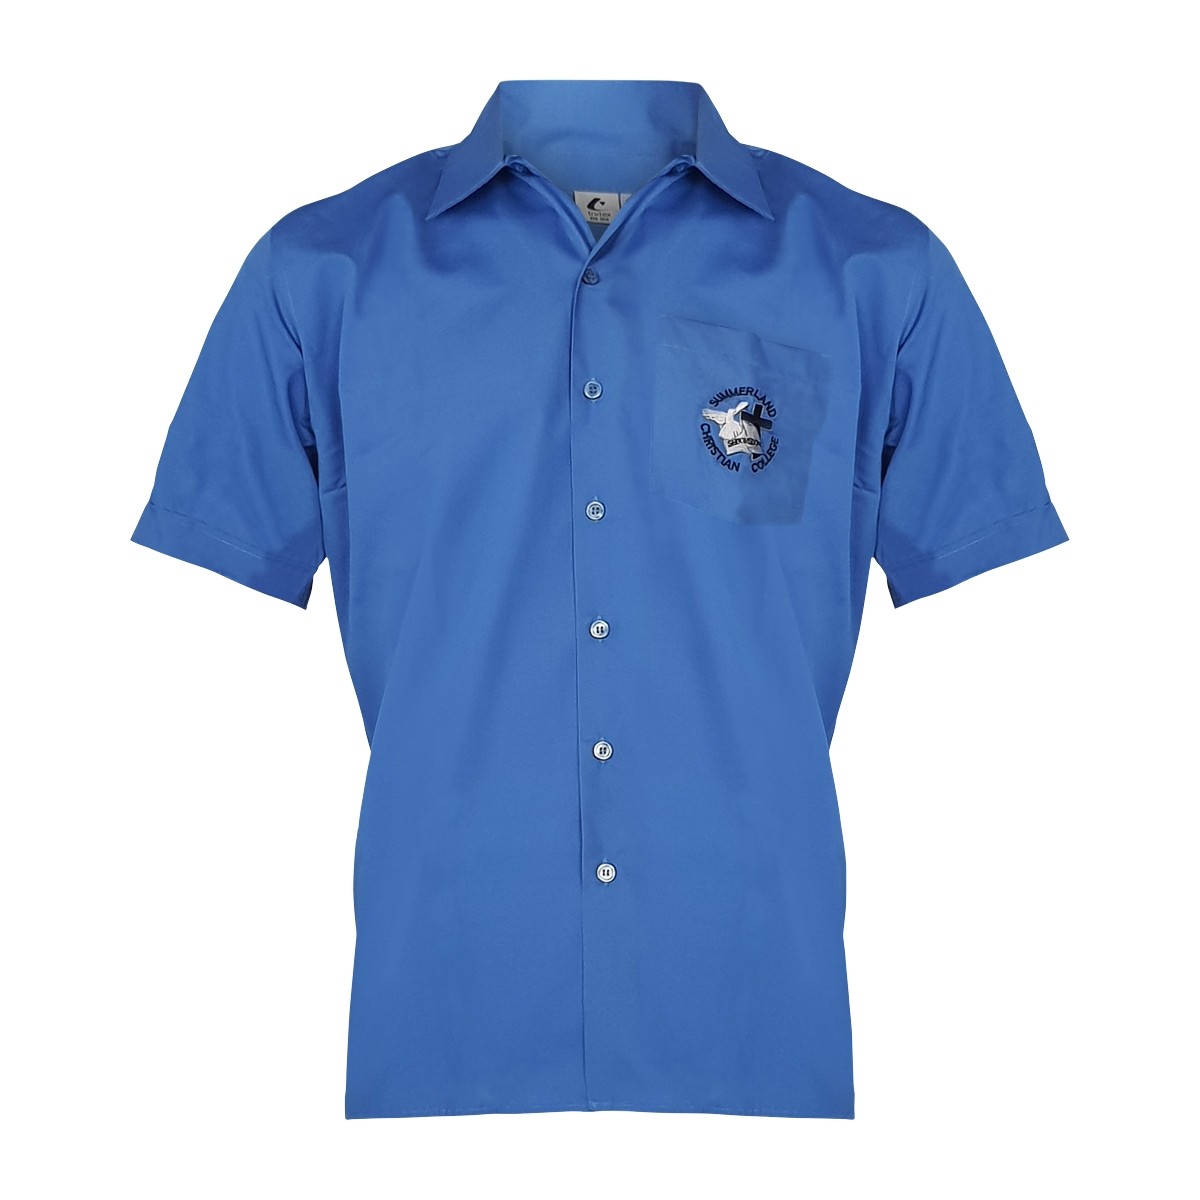 Jnr Boys Blue Shirt - School Locker